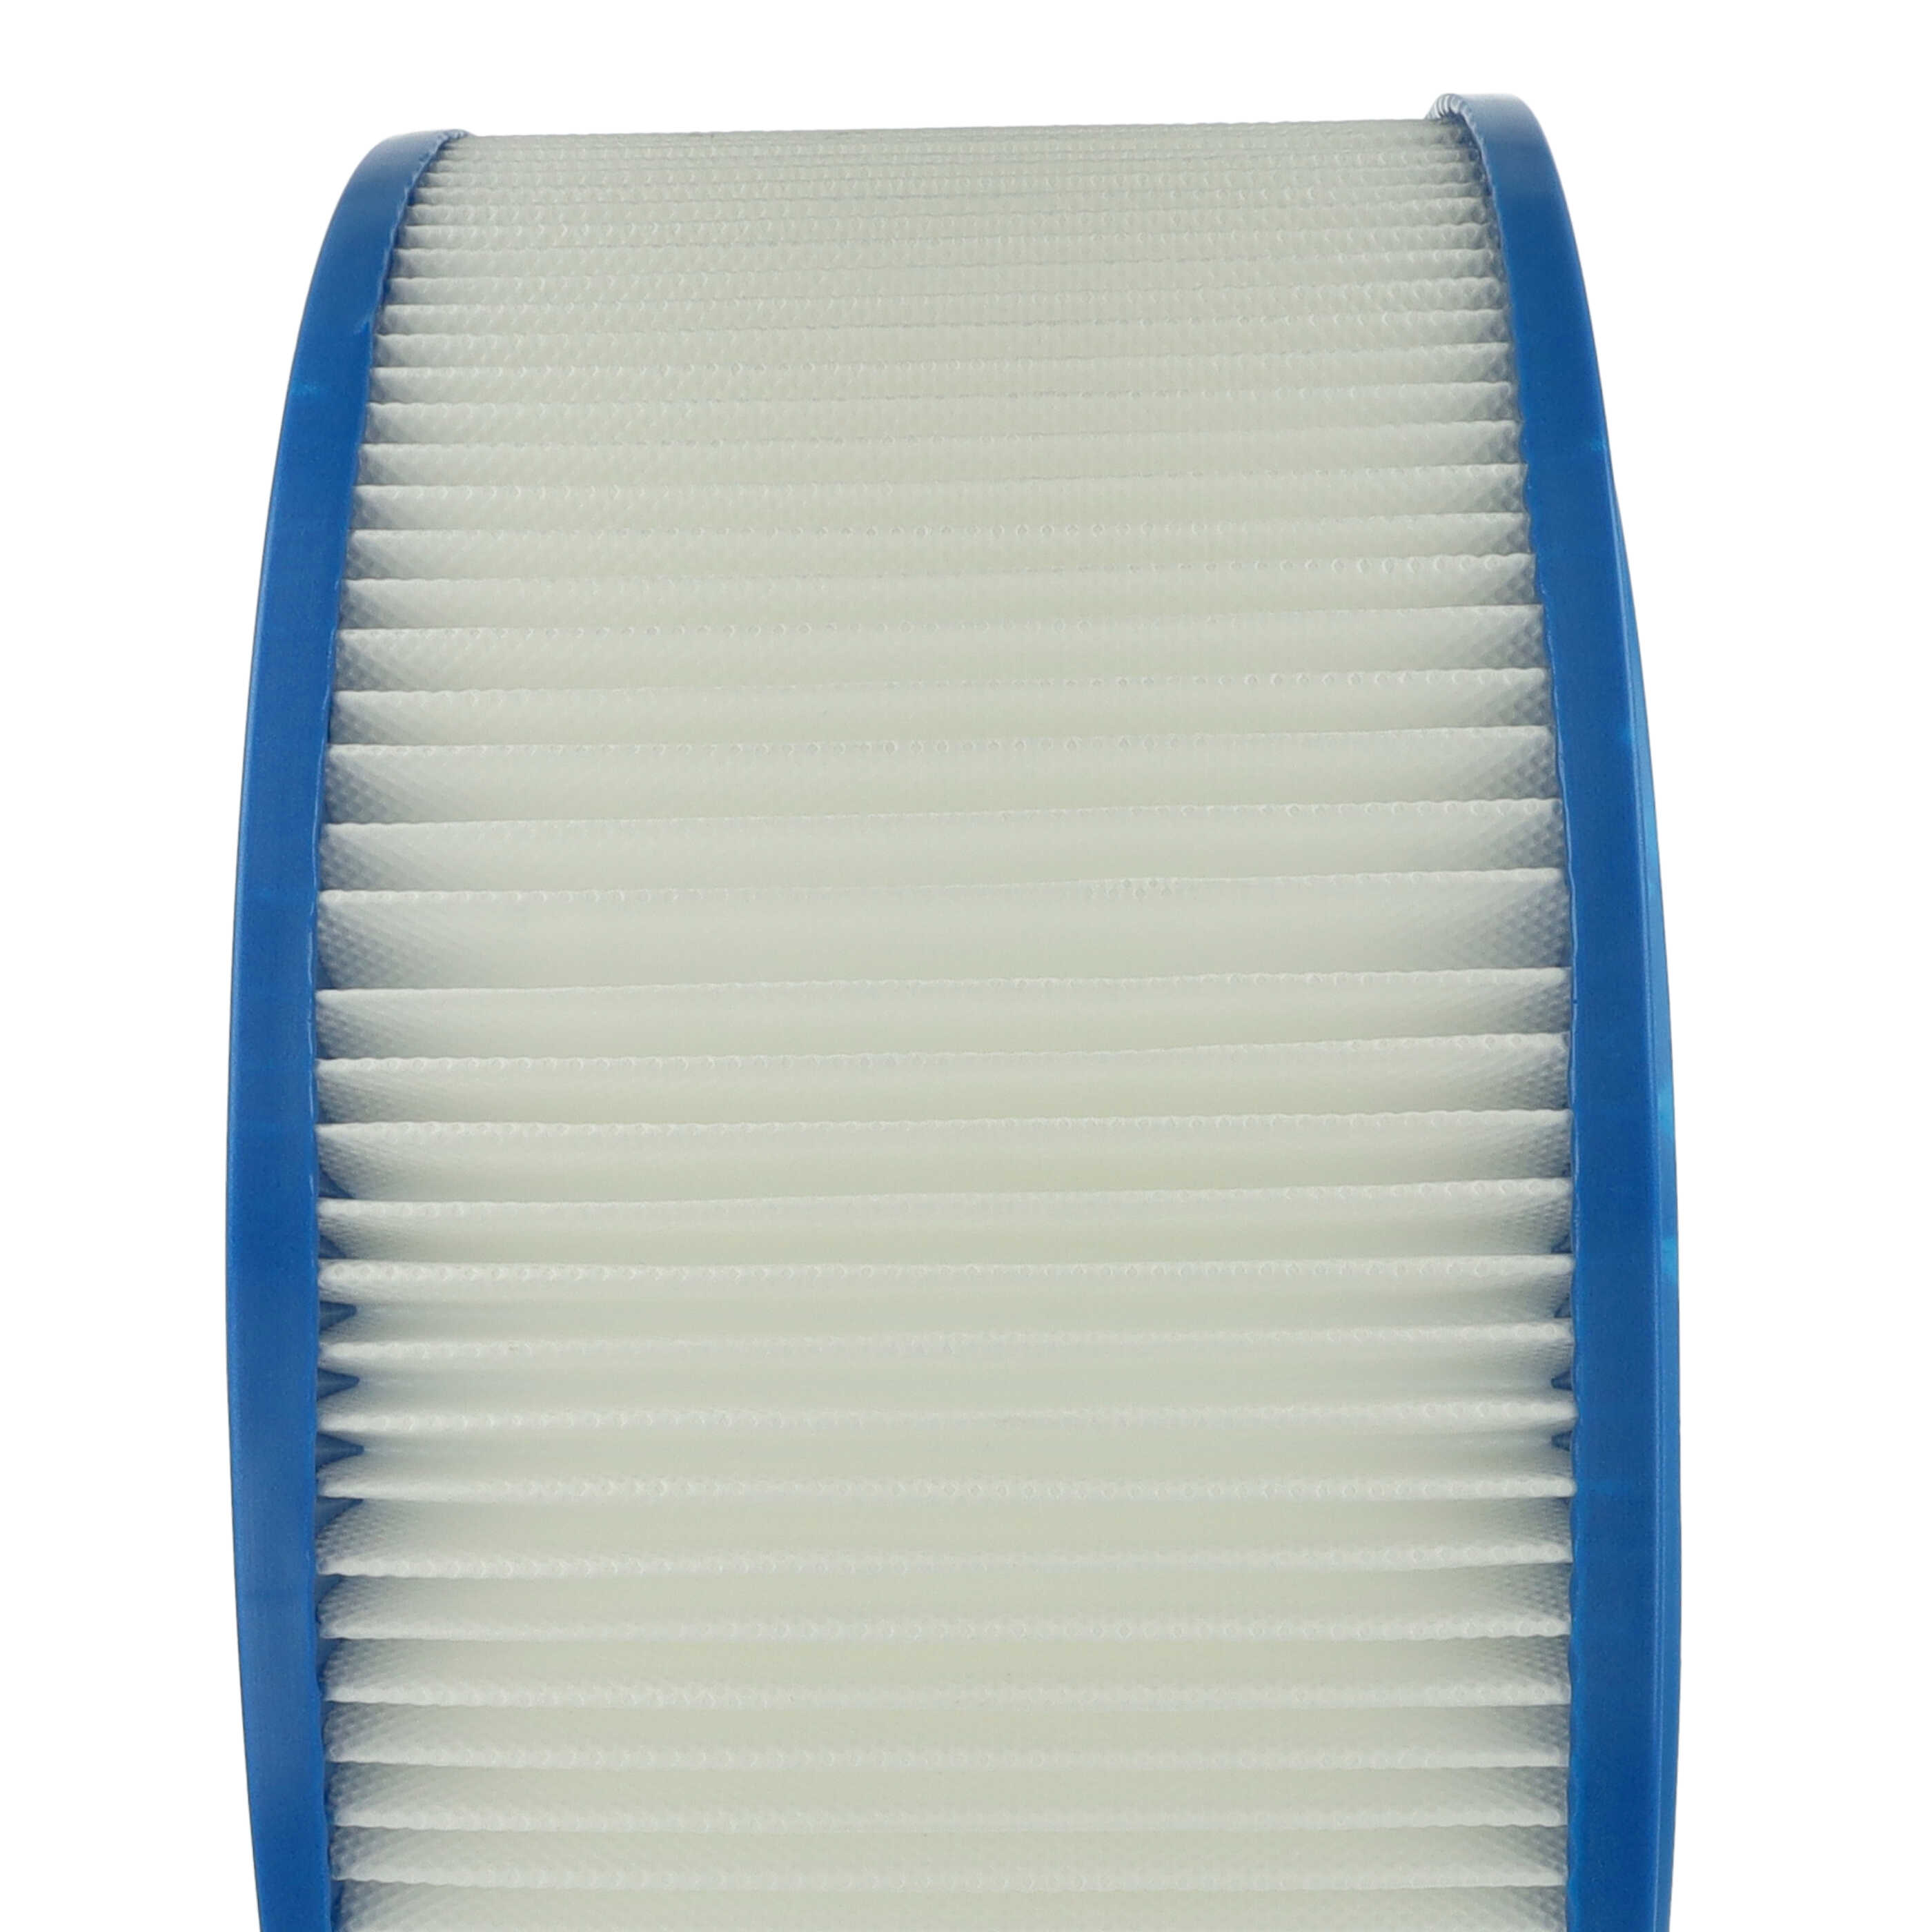 Filtro sostituisce Hilti 371145 per aspirapolvere - filtro cartucce